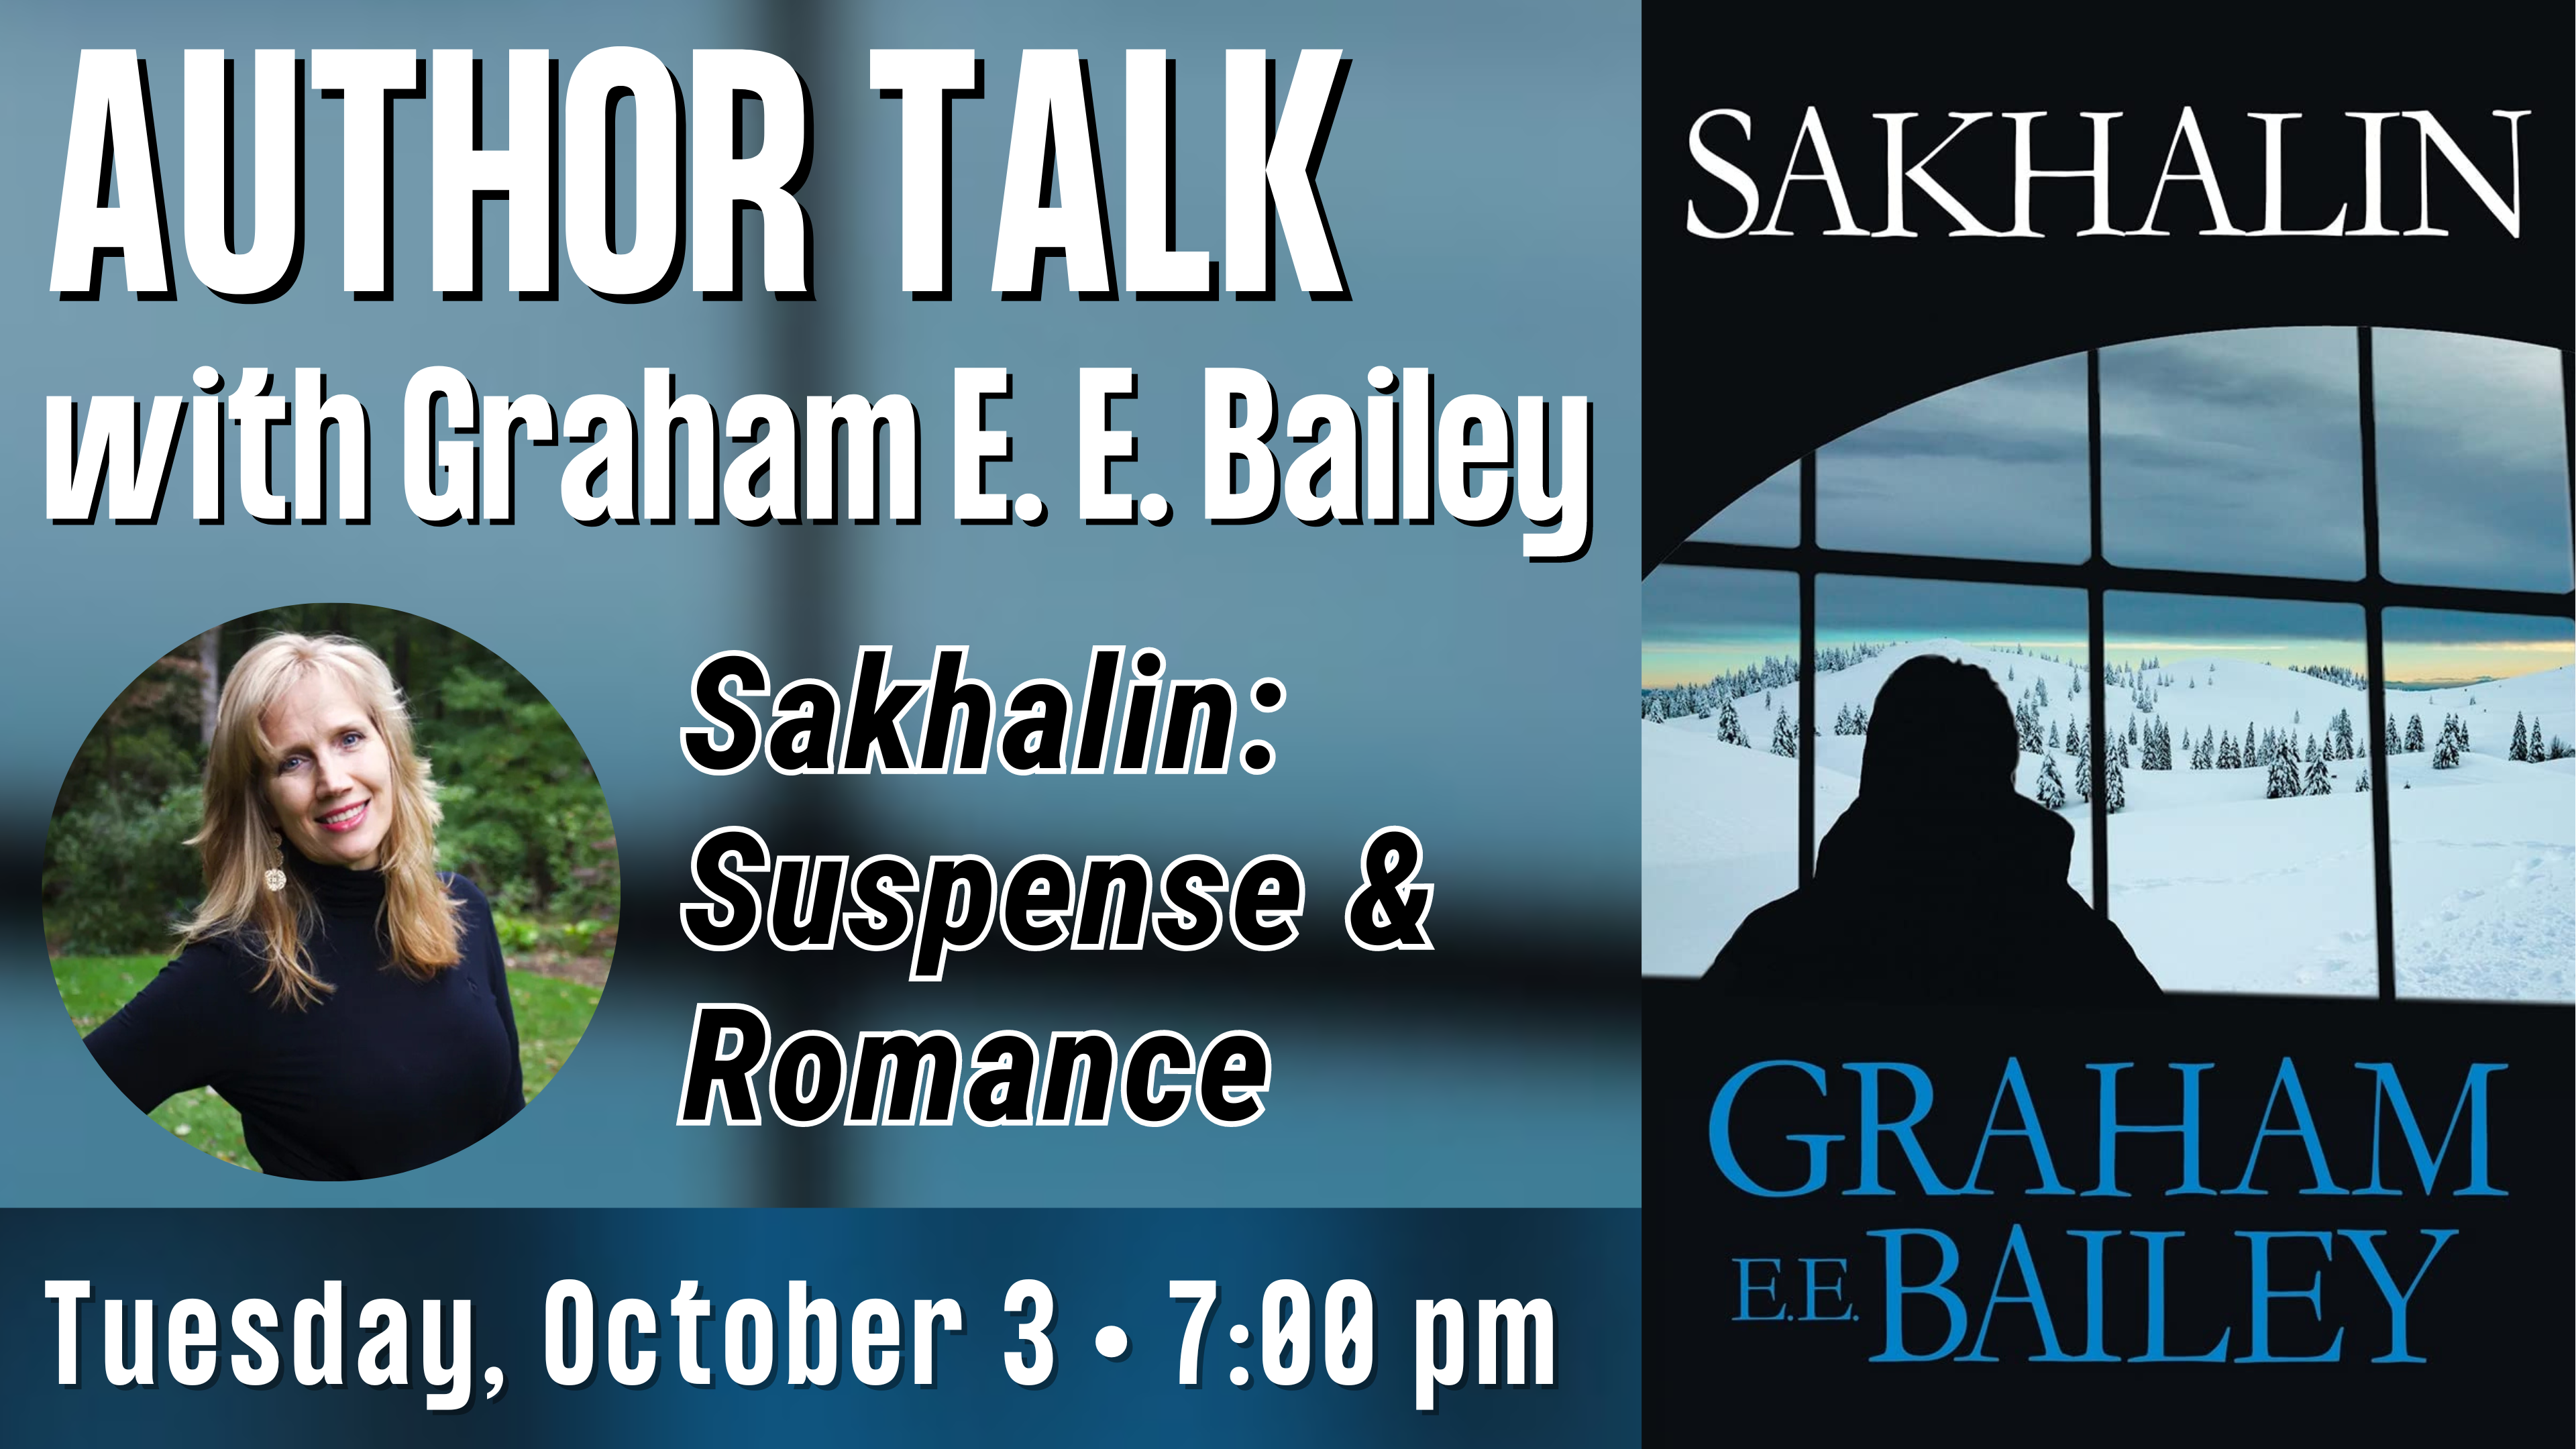 Author Talk - Graham E. E. Bailey